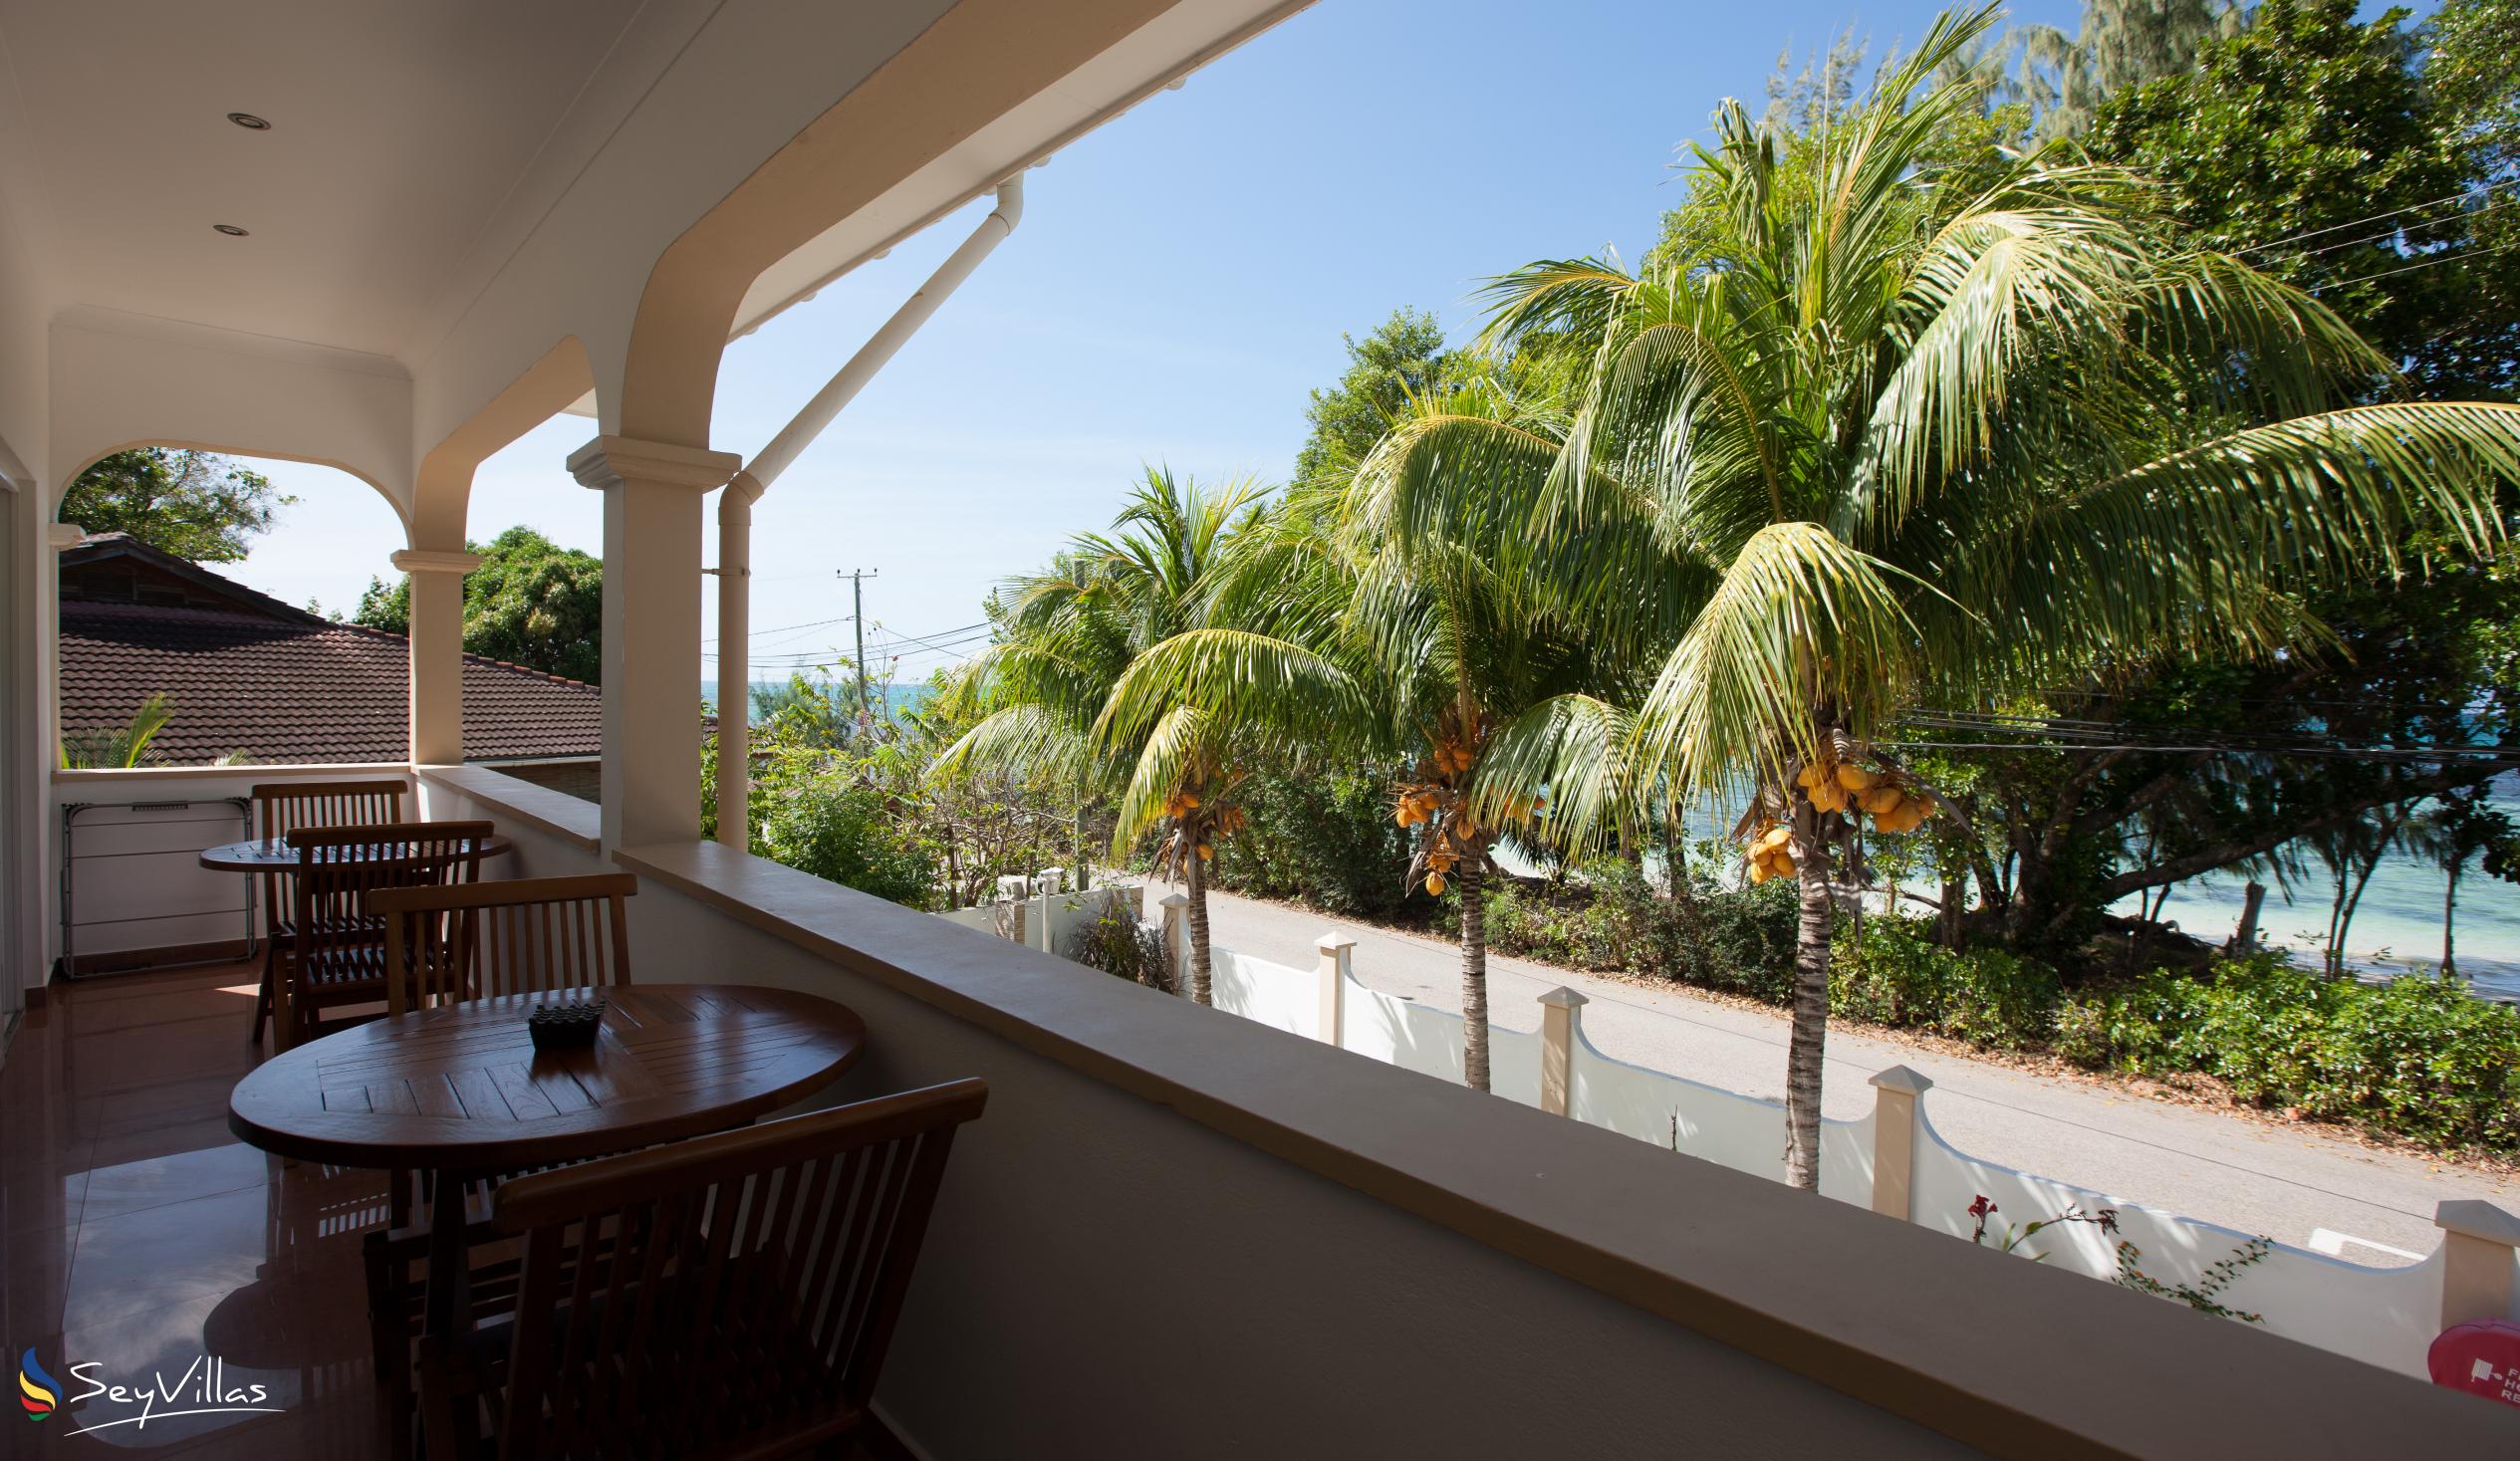 Foto 10: YASAD Luxury Beach Residence - Appartement mit 3 Schlafzimmern - Praslin (Seychellen)